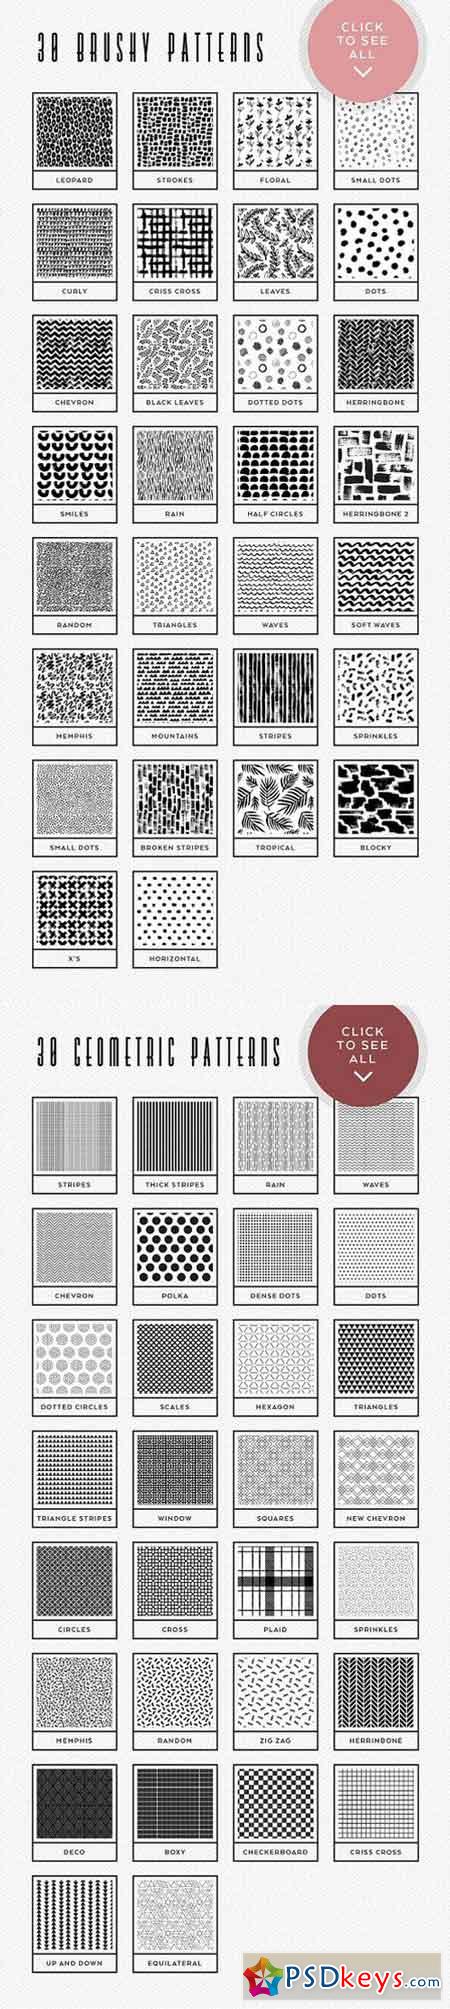 80 Essential Patterns 1572303